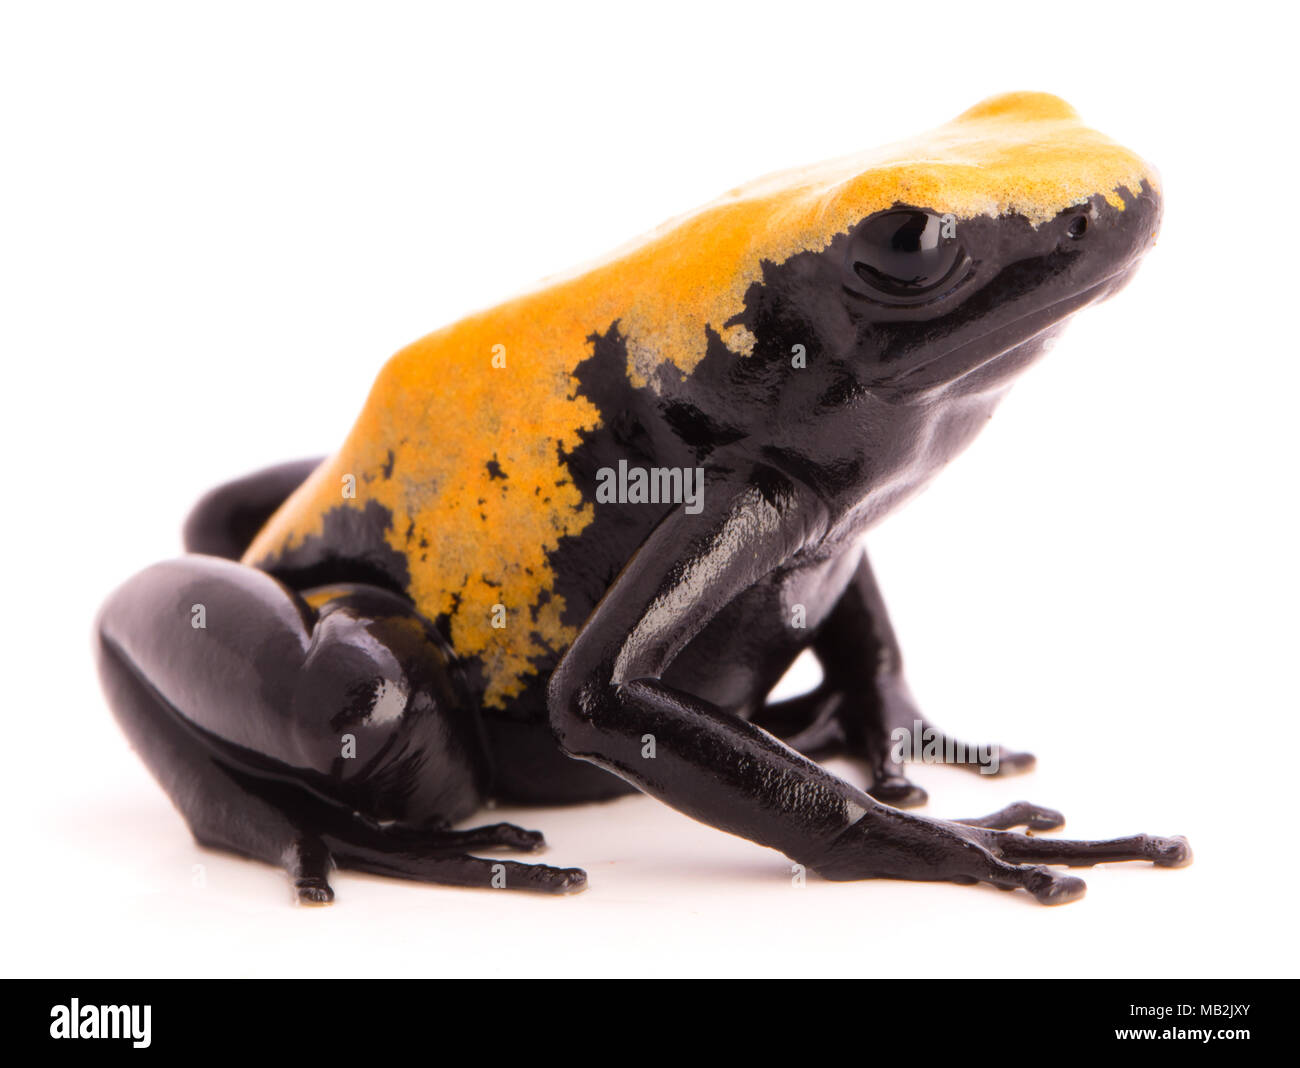 Wieder spritzte Poison dart Frog, Dendrobates galactonotus aus dem Regenwald des Amazonas in Brasilien. Auf weiß Isoliert Stockfoto